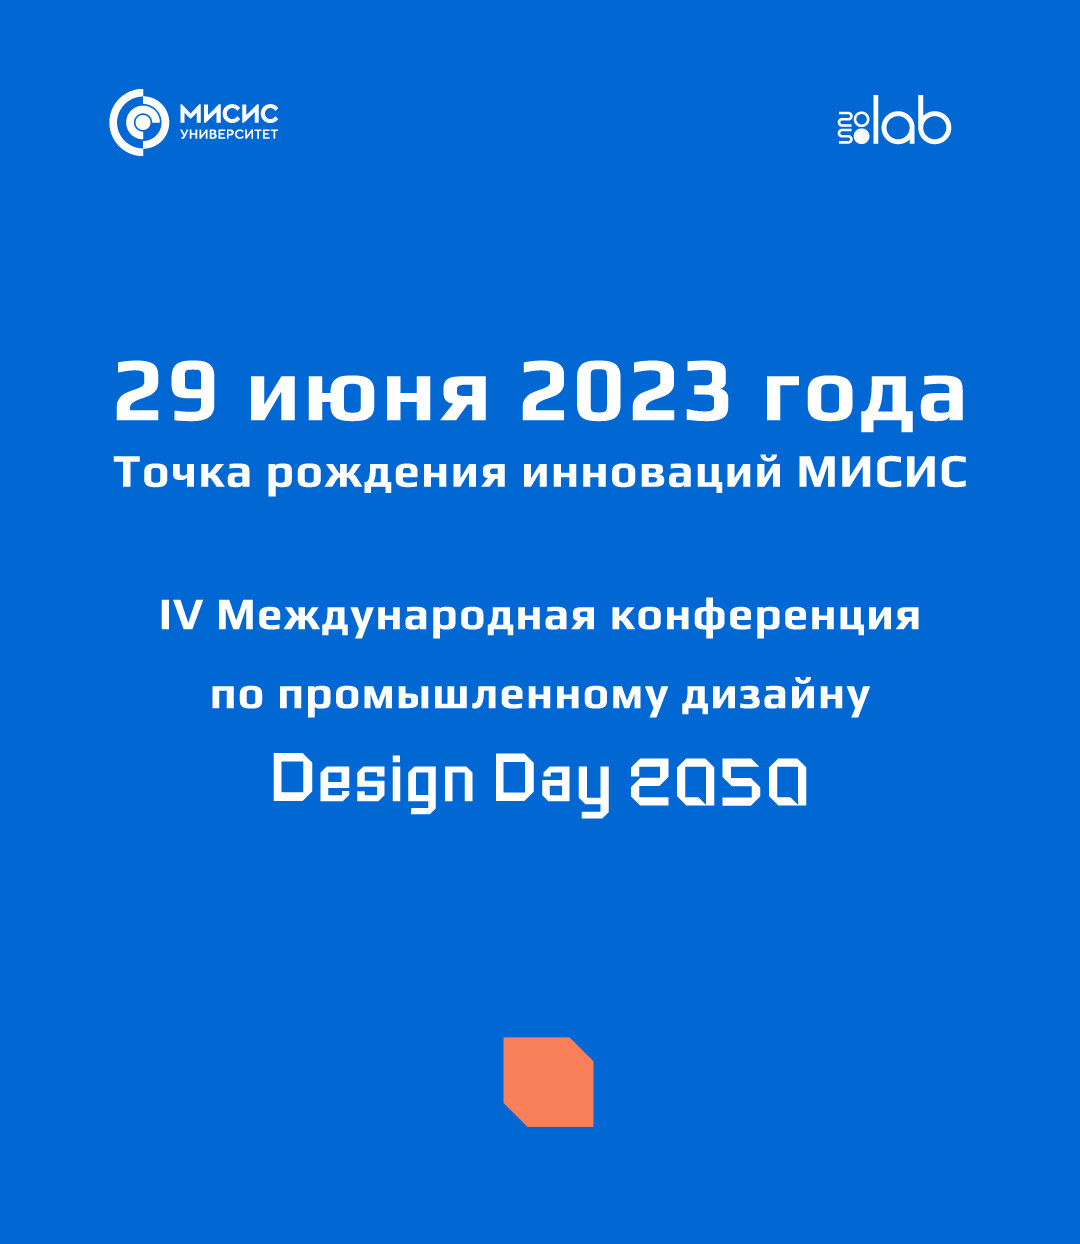 Design Day 2050: самое масштабное событие промдизайна России пройдет 29 июня